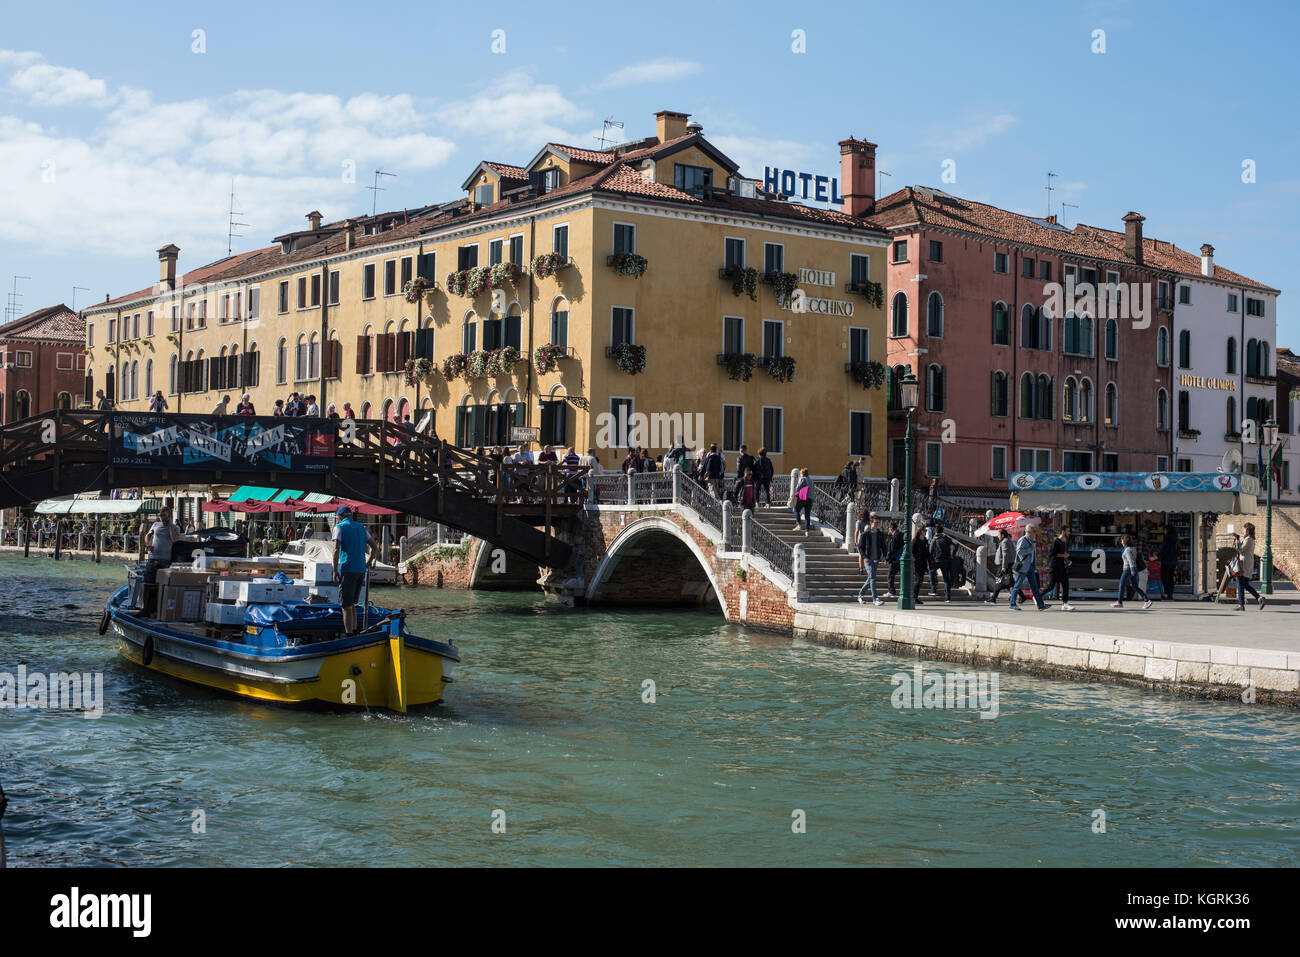 Junction of Rio Nuovo and Rio Sant Andrea near Piazzale Roma, Venice Stock Photo